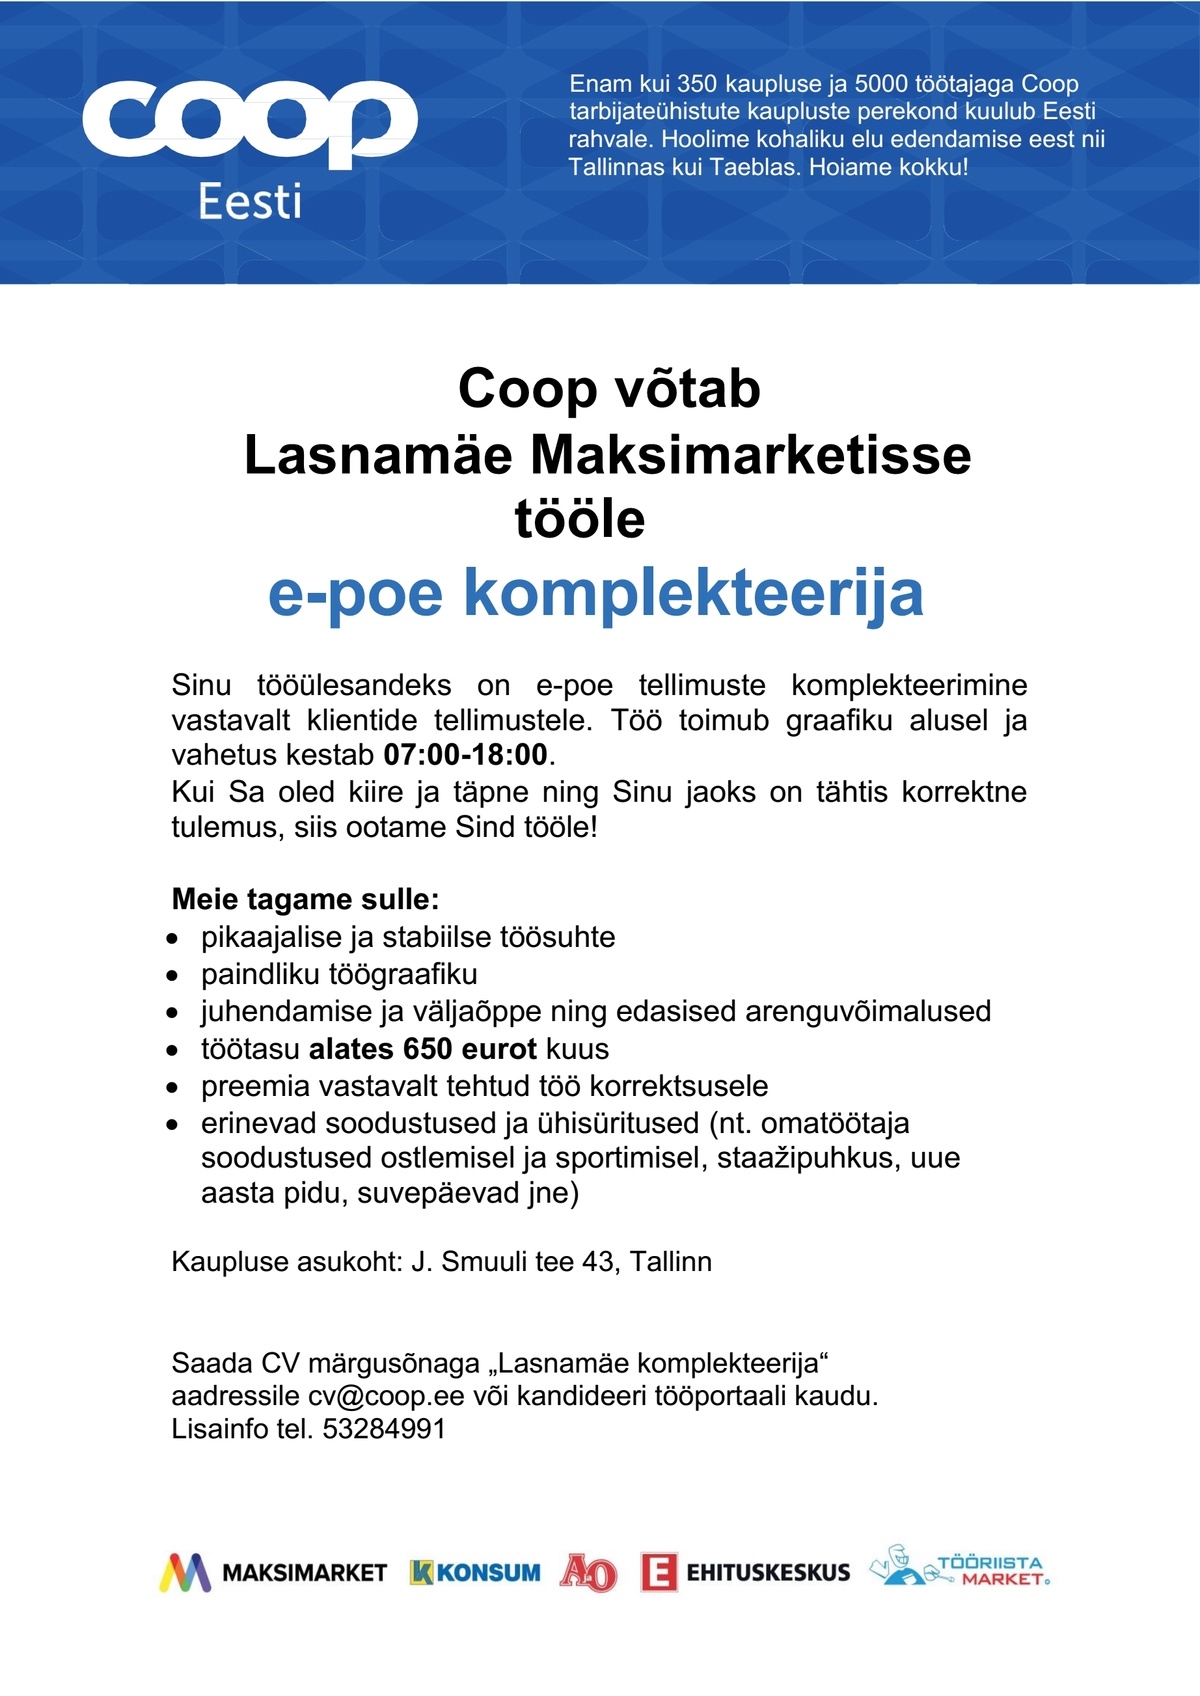 Coop Kaubanduse AS Komplekteerija e-poes (Lasnamäe Maksimarket)